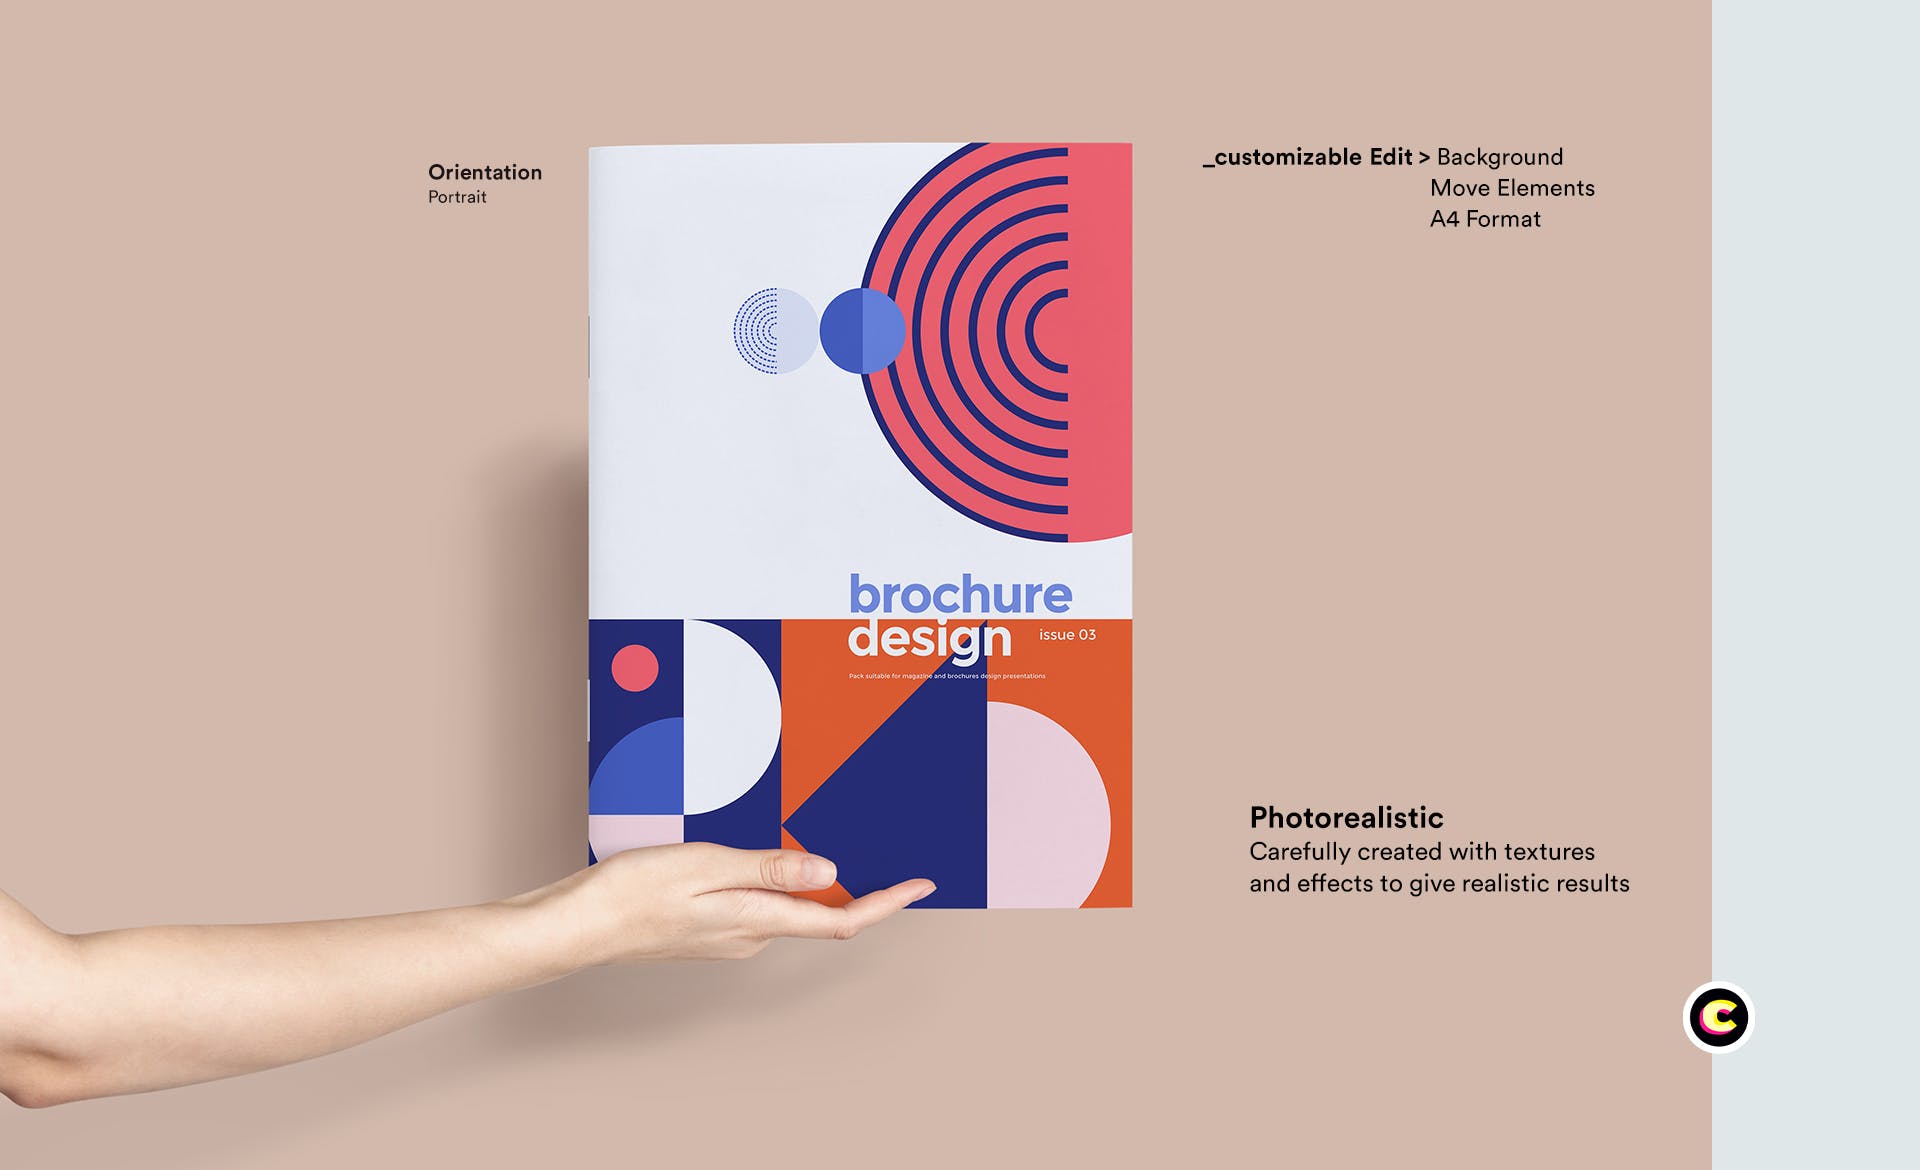 企业品牌画册/宣传册封面设计效果图样机素材库精选 Brochure Mockup插图(1)